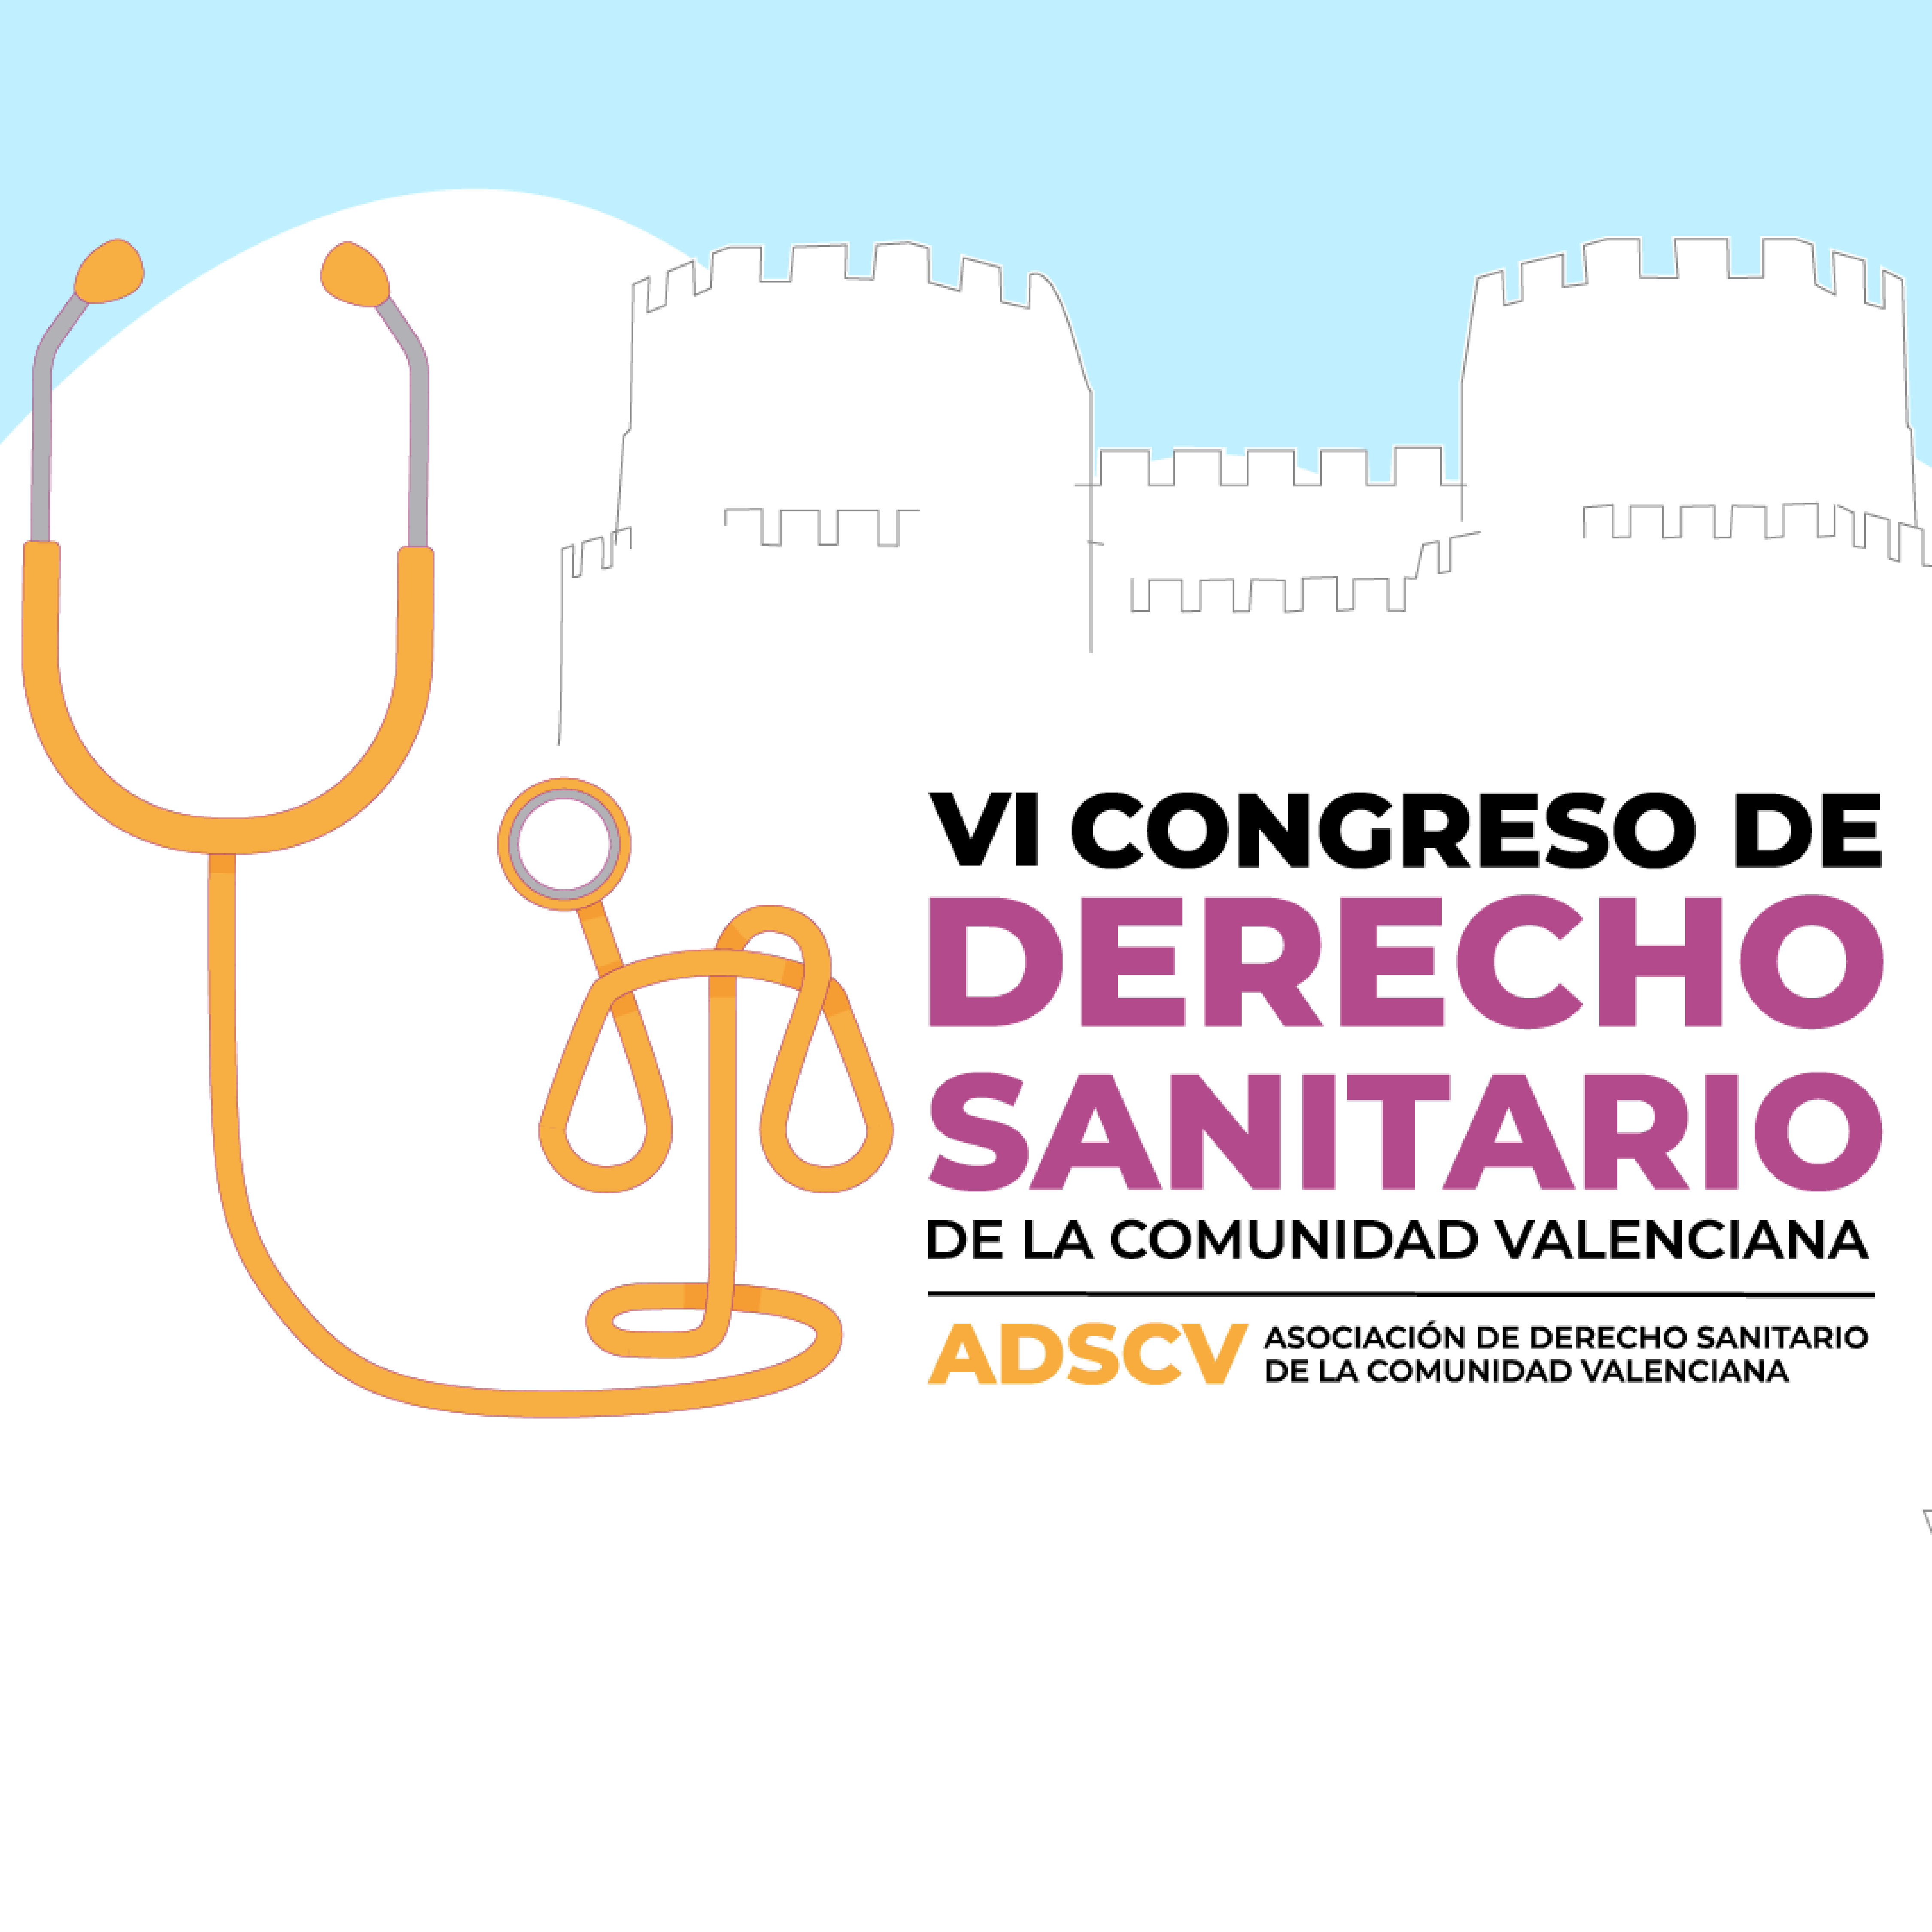 VI Congreso de Derecho Sanitario de la Comunidad Valenciana